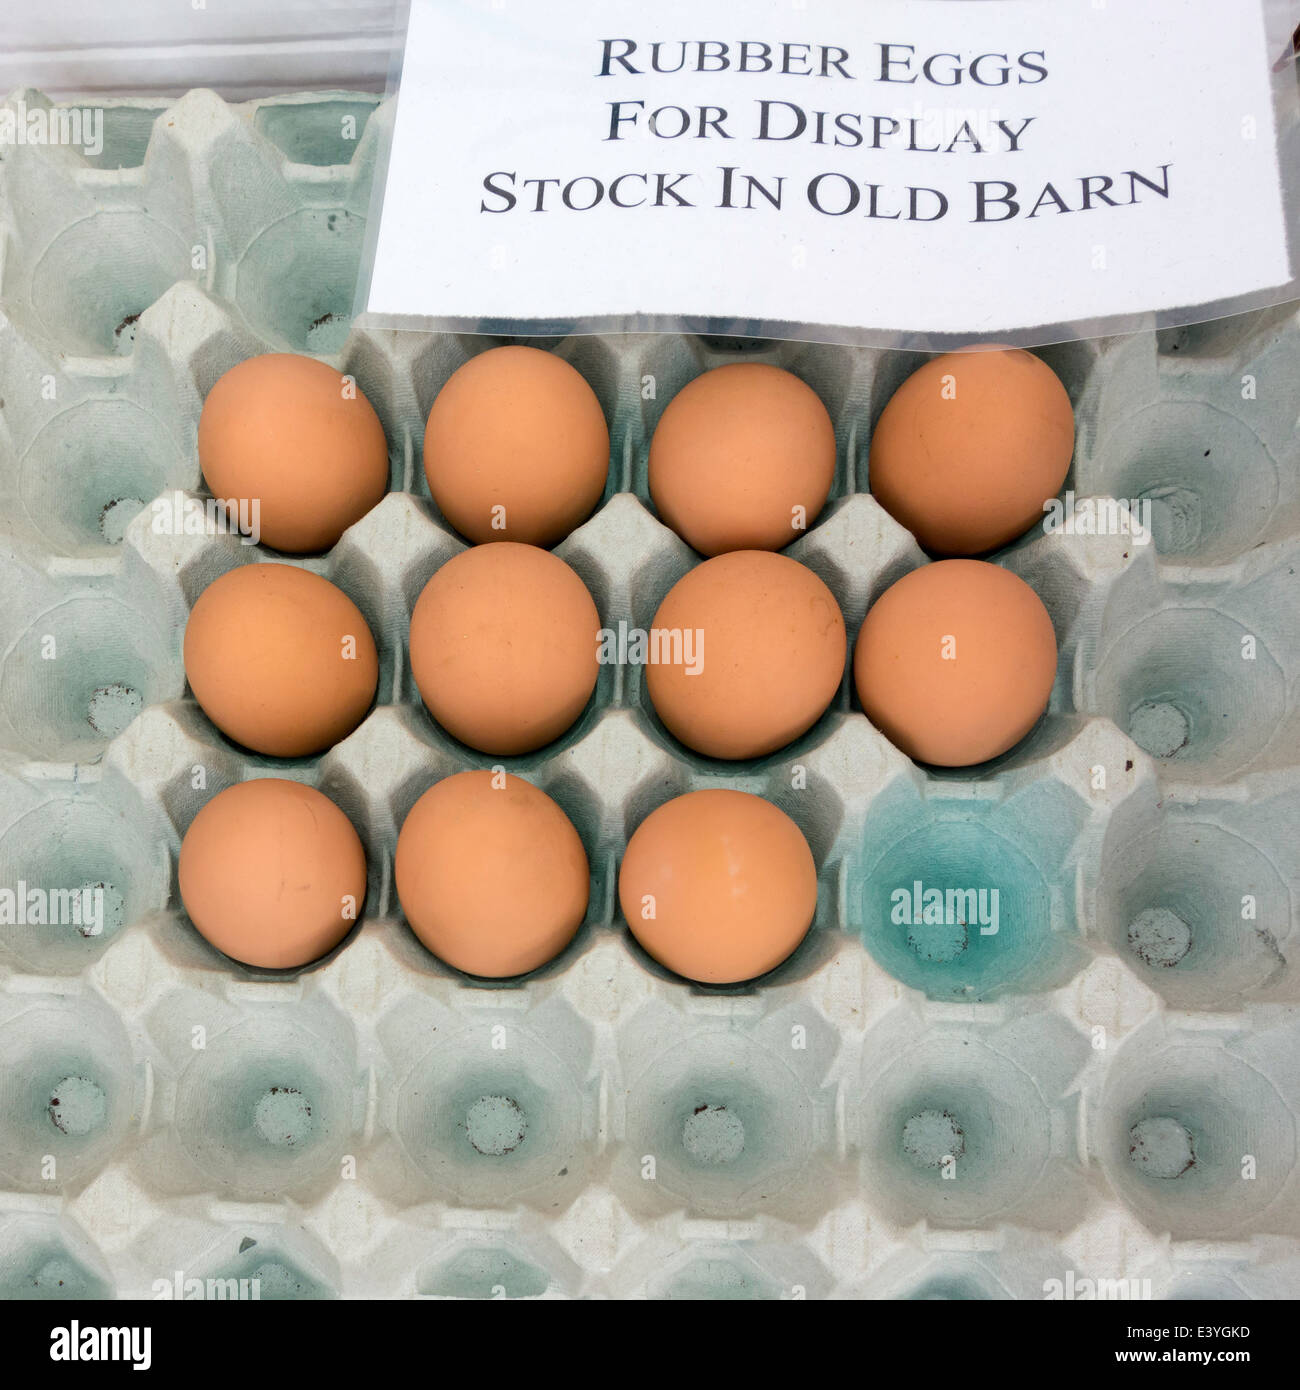 Visualización de los huevos de gallina marrón para la venta, los huevos de goma en lugar de reales para desalentar el robo Foto de stock